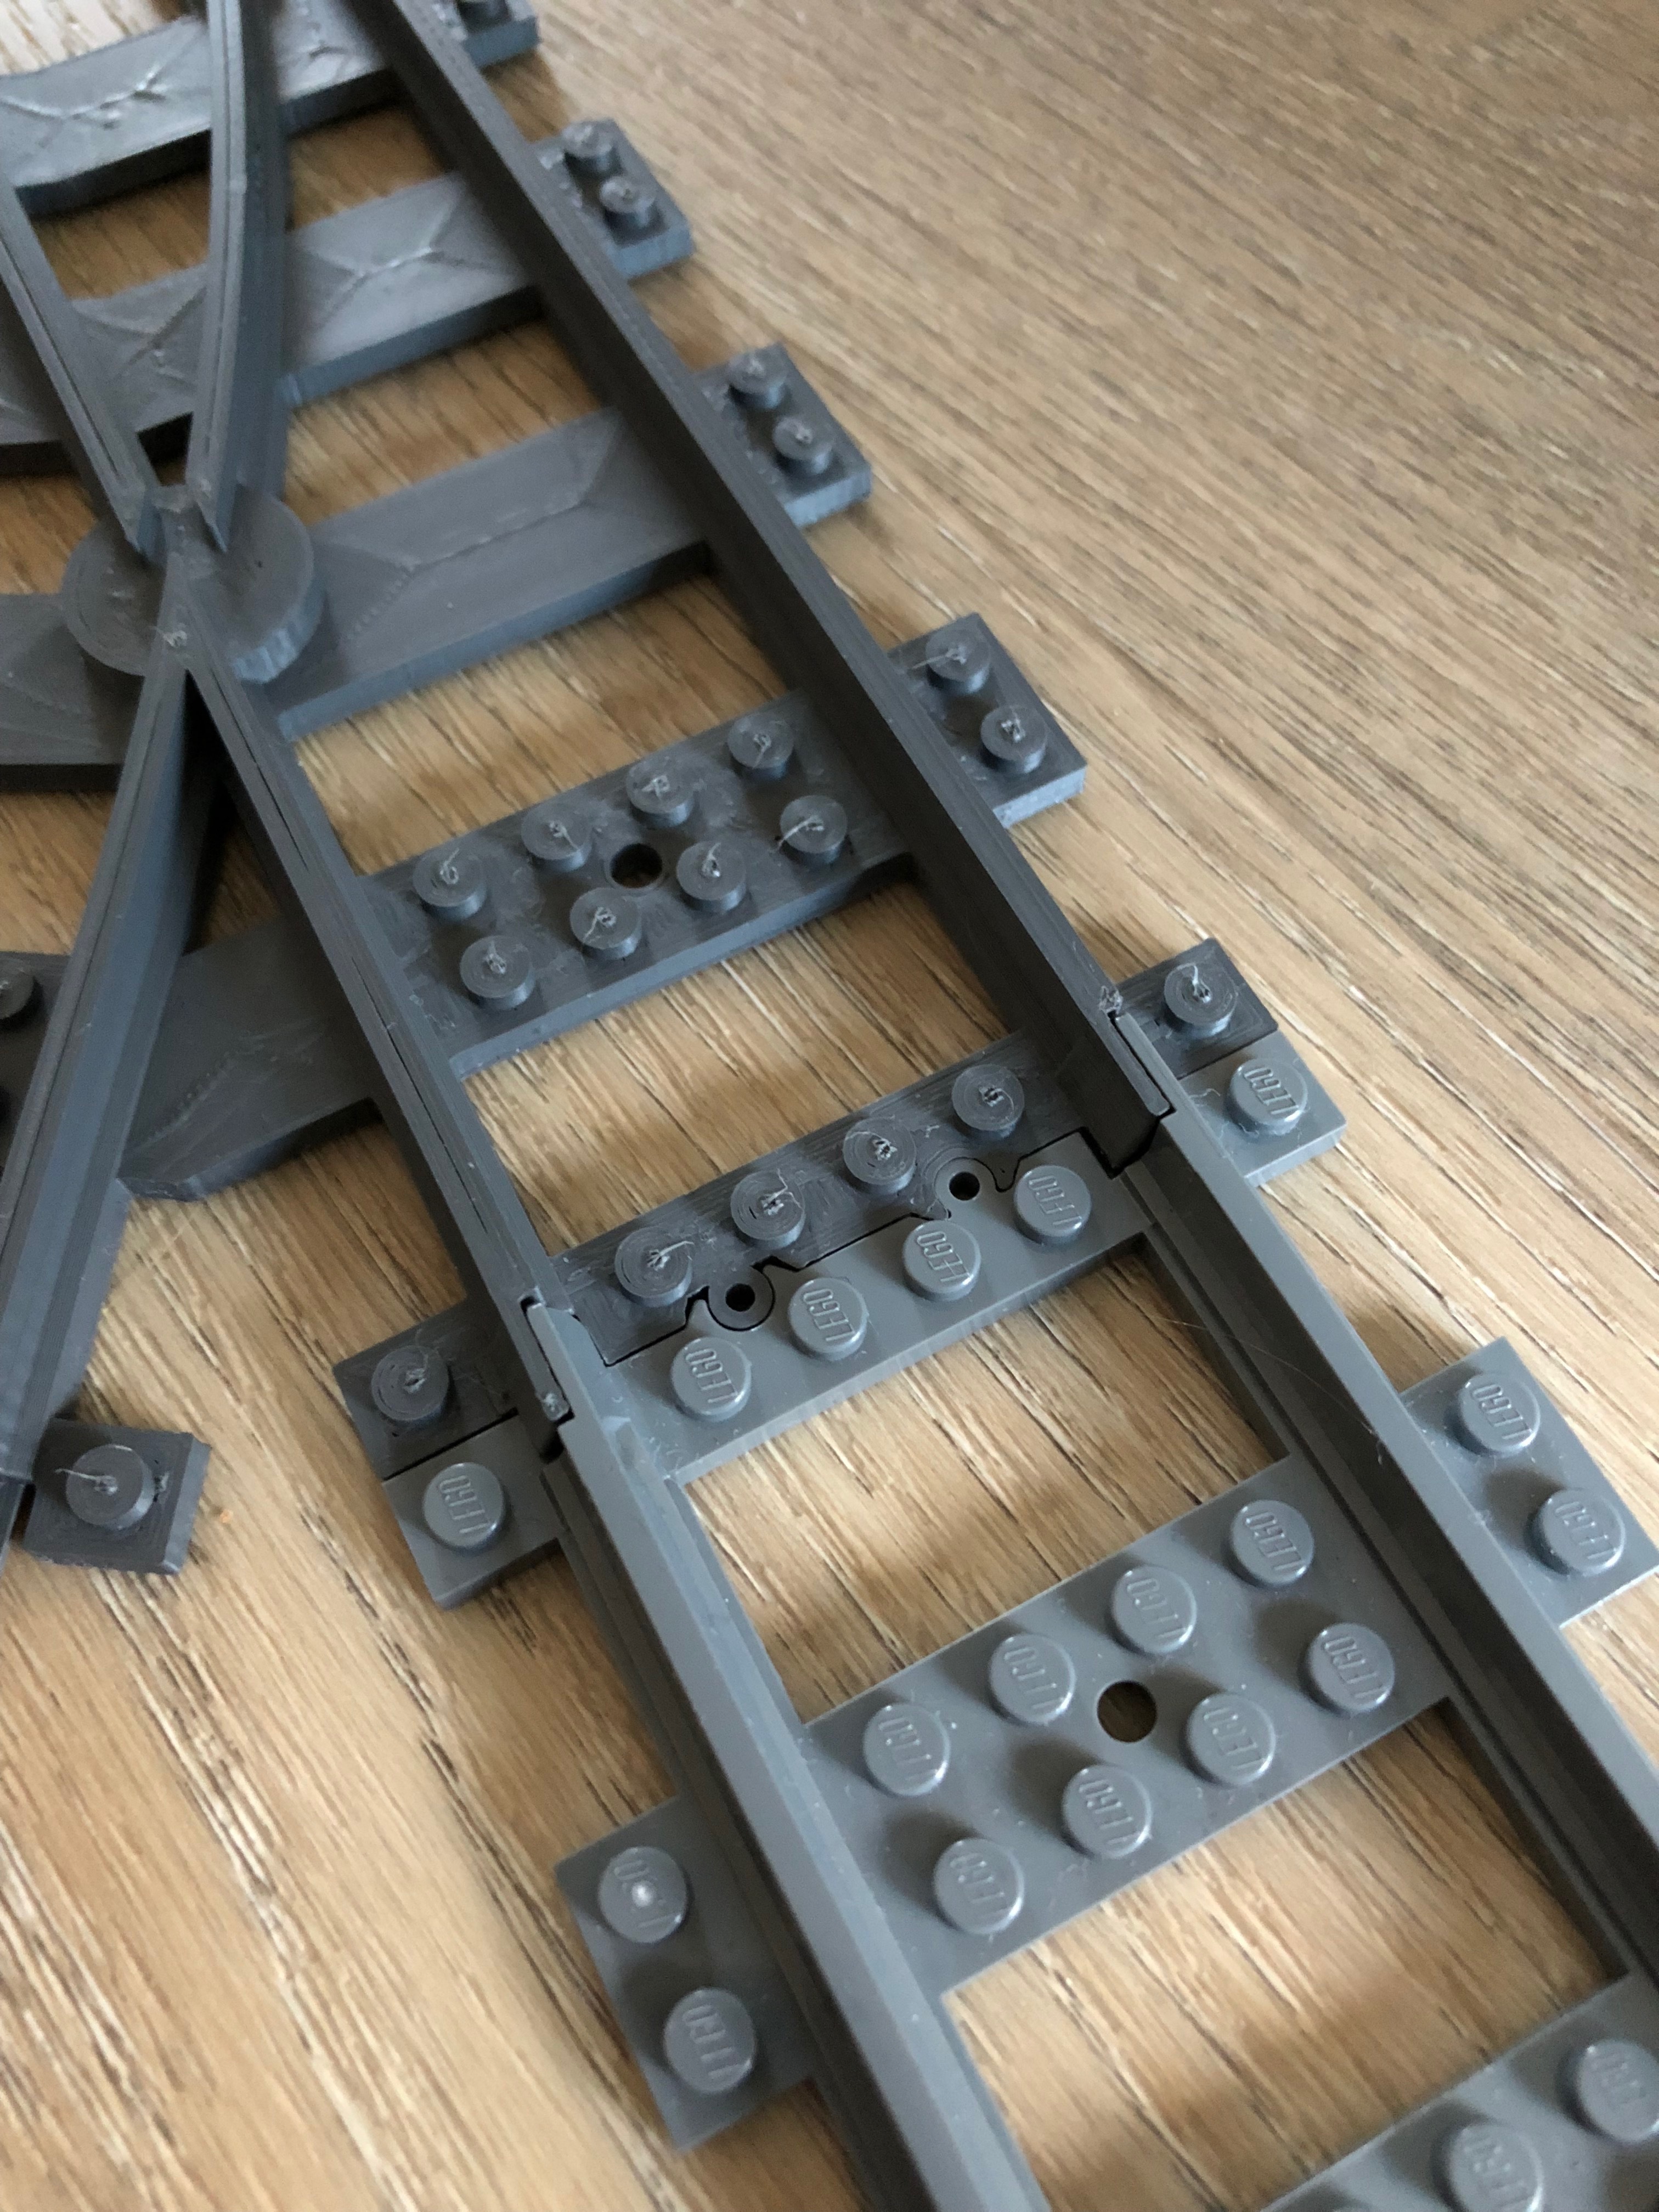 Passage à niveau courbe (40dots) pour train LEGO CITY - 3D Printed - ALFO  Track